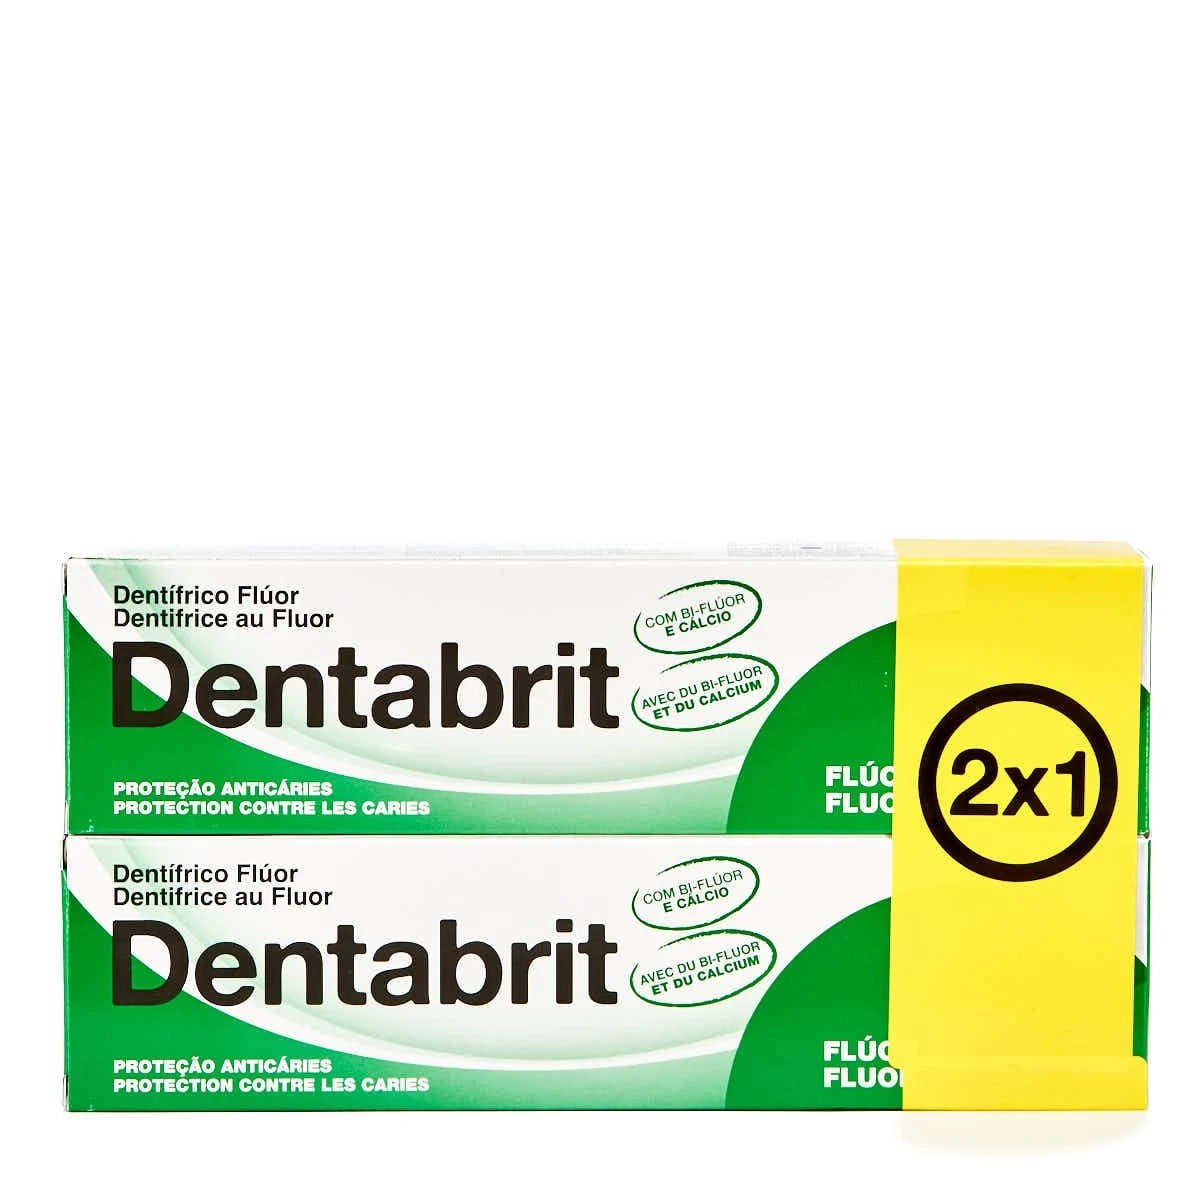 Dentabrit pasta dental flúor 2x1, 2 x 125 ml